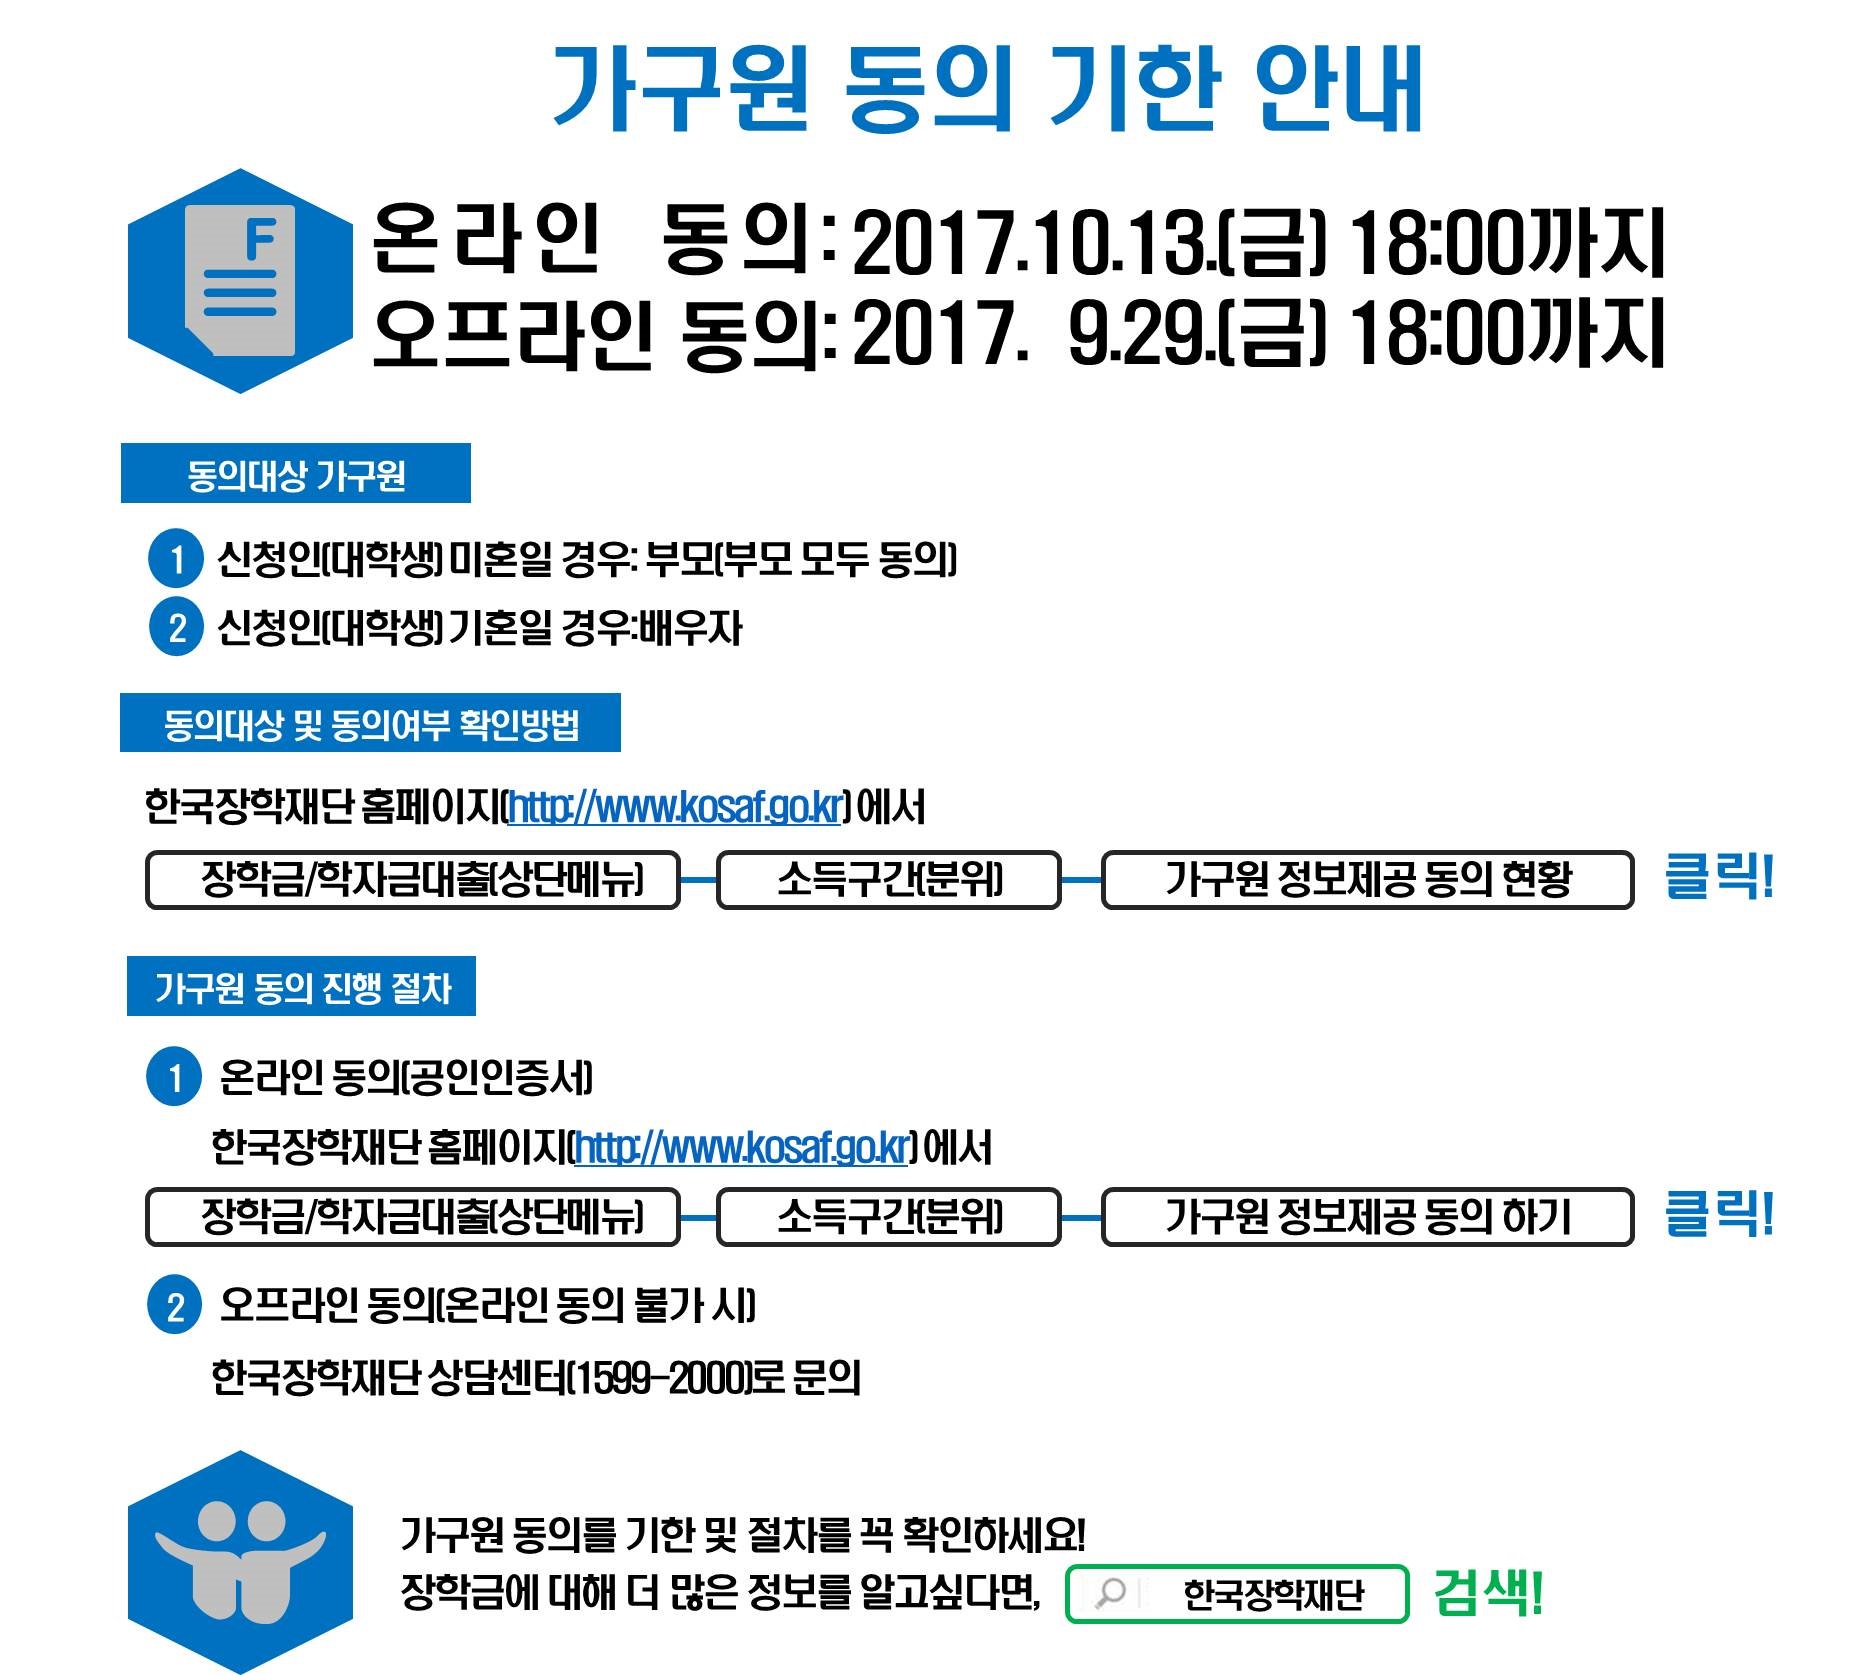 한국장학재단 가구원 동의 기한 안내